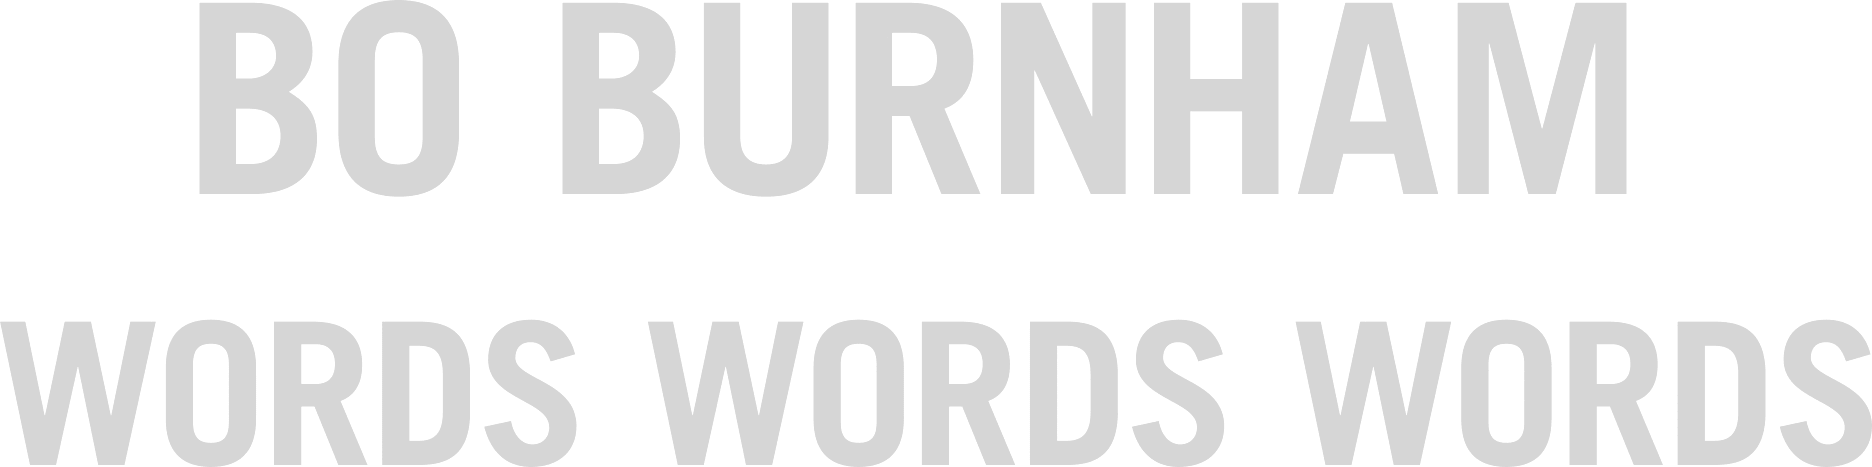 Bo Burnham: Words, Words, Words logo